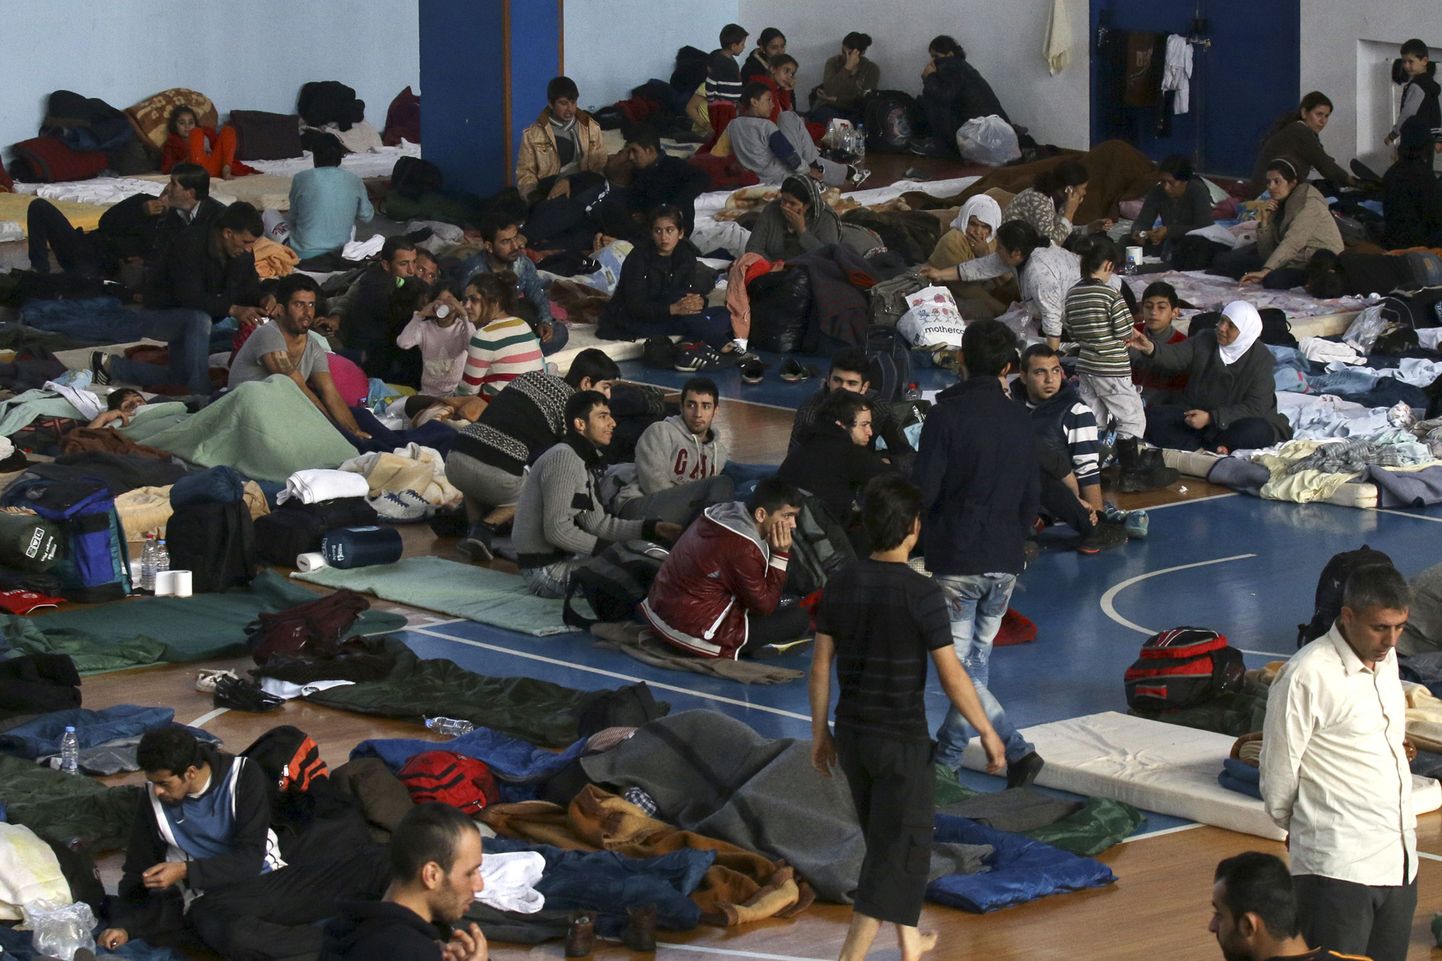 Novembris Vahemerelt hüljatud kaubalaevalt evakueeritud põgenikud, kellest suurem osa tuli Süüriast ja Iraagis.